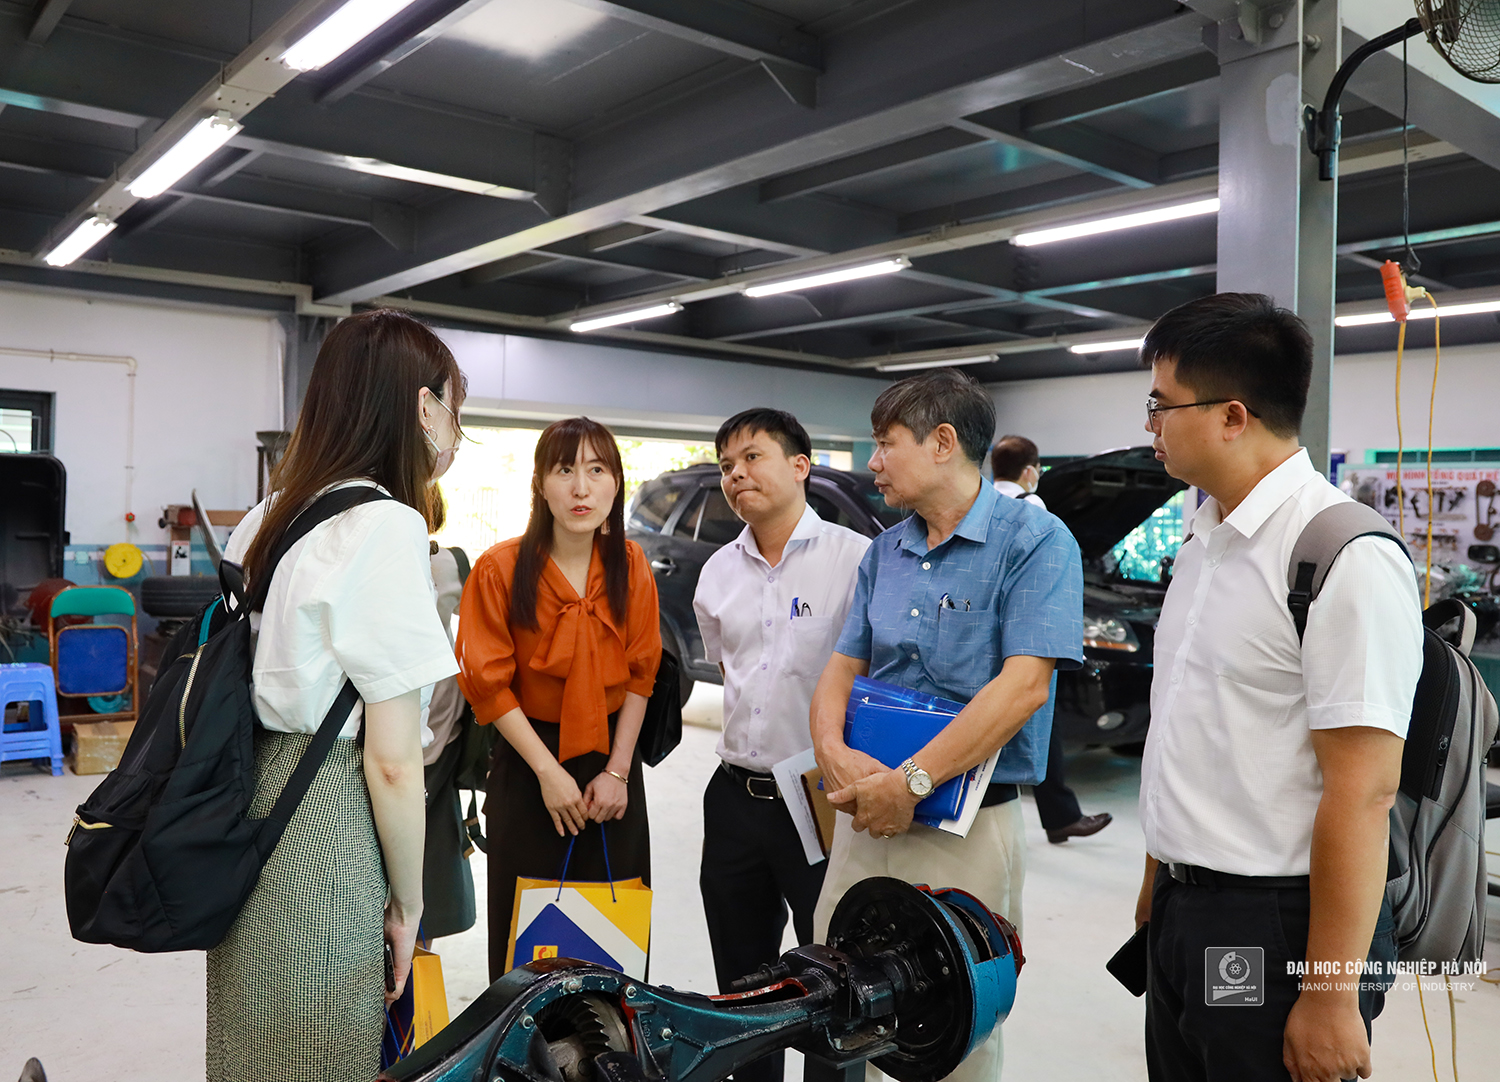 Đoàn chuyên gia Nhật Bản tới thăm và làm việc tại Trường Đại học Công nghiệp Hà Nội